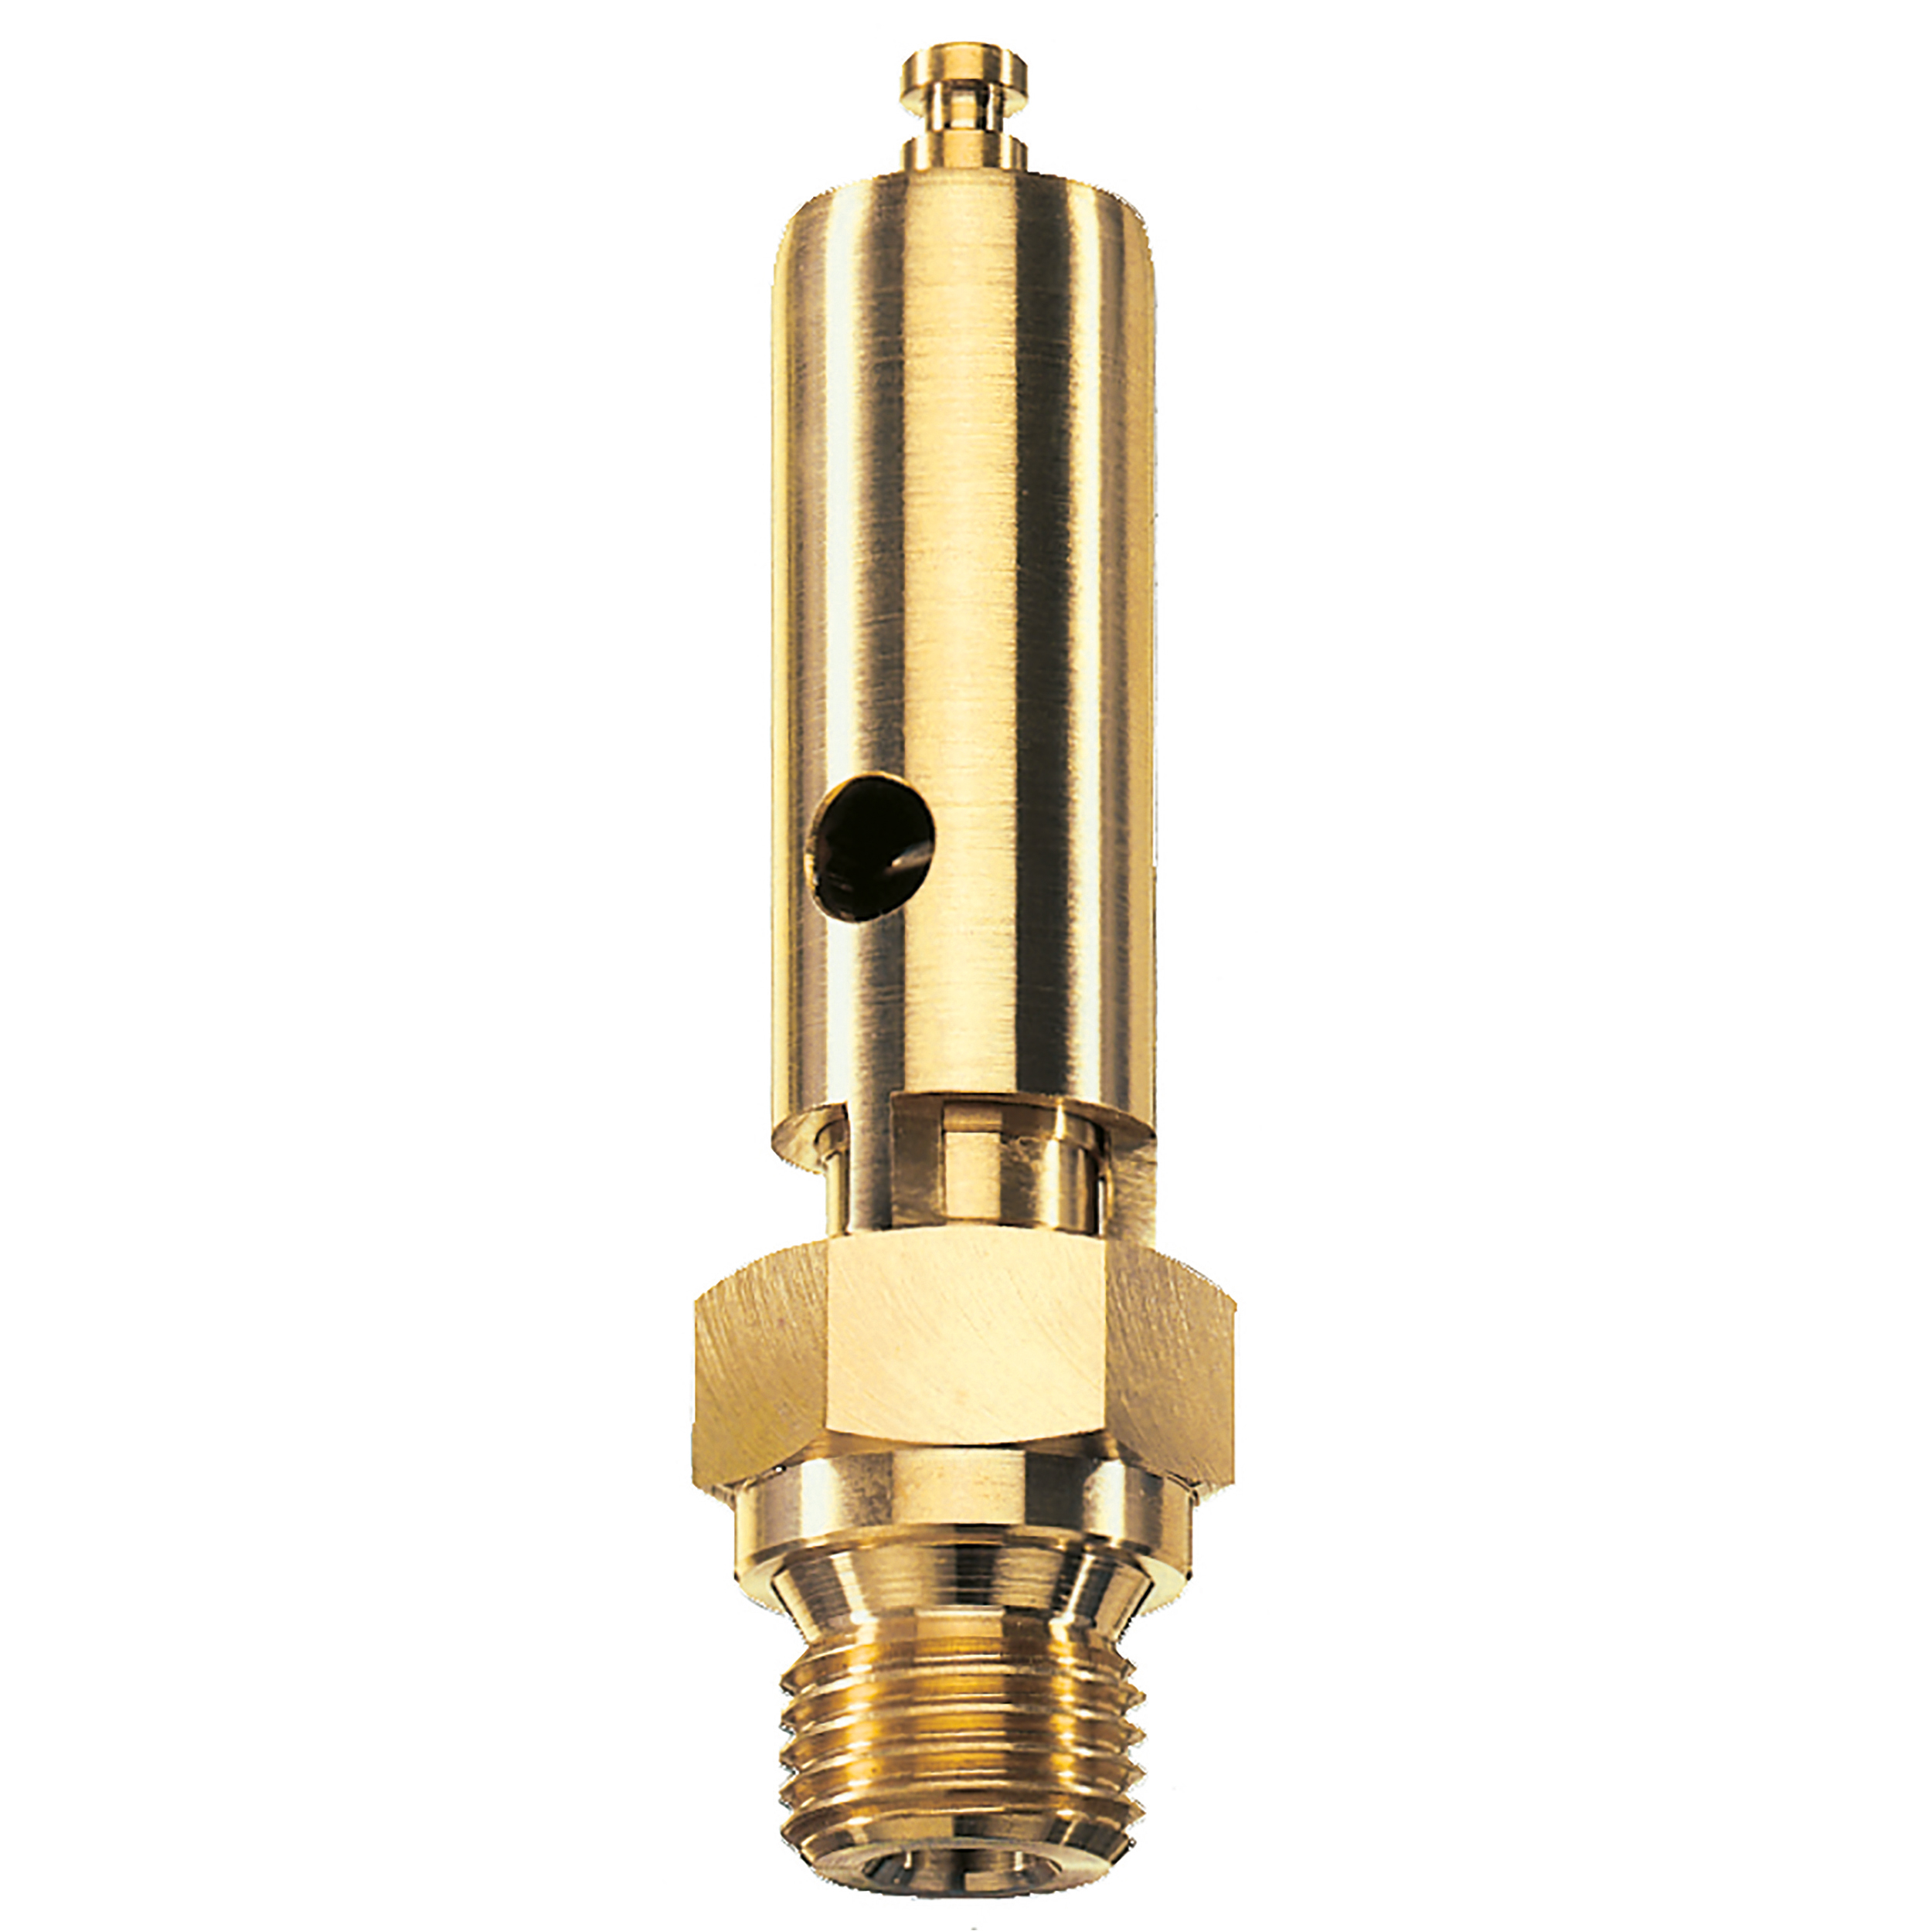 Savety valve component tested DN 6, G¼, L: 60 mm, seal: FKM, set pressure: 10.6 bar (153,7 psi), TÜV approval